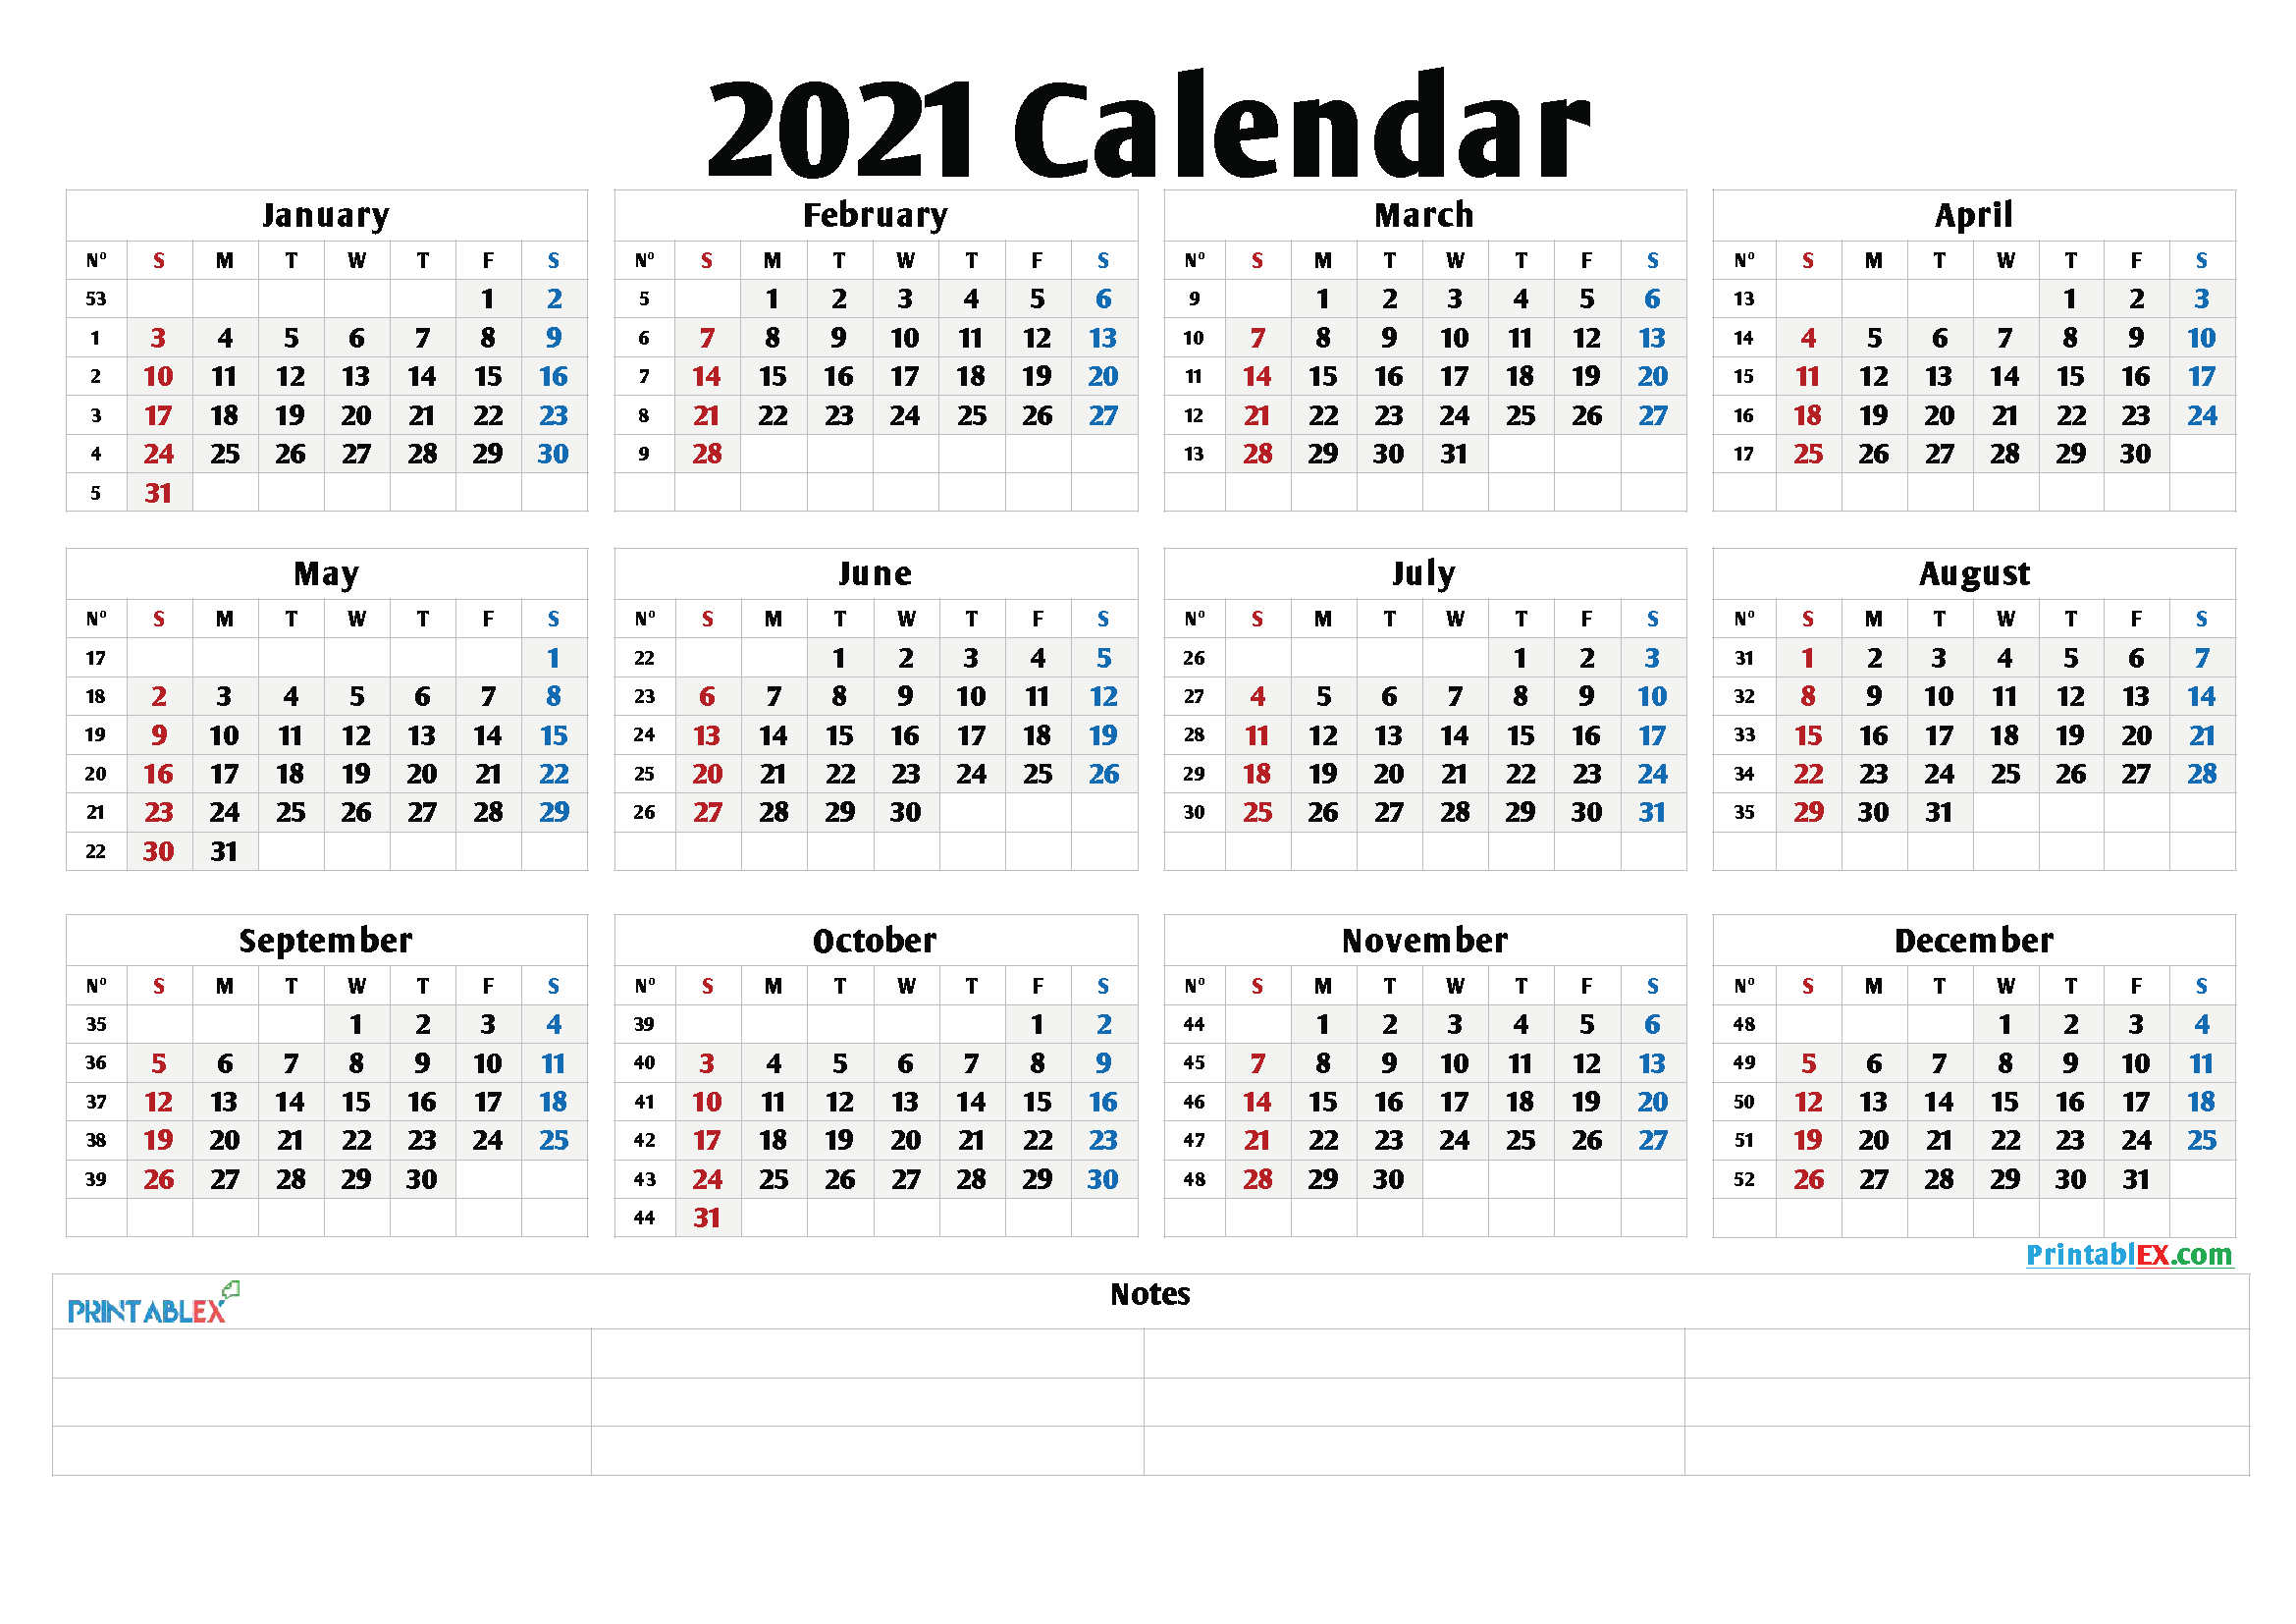 2021 Calendar With Week Number Printable Free - Free-Calendar 2021 With Week Numbers